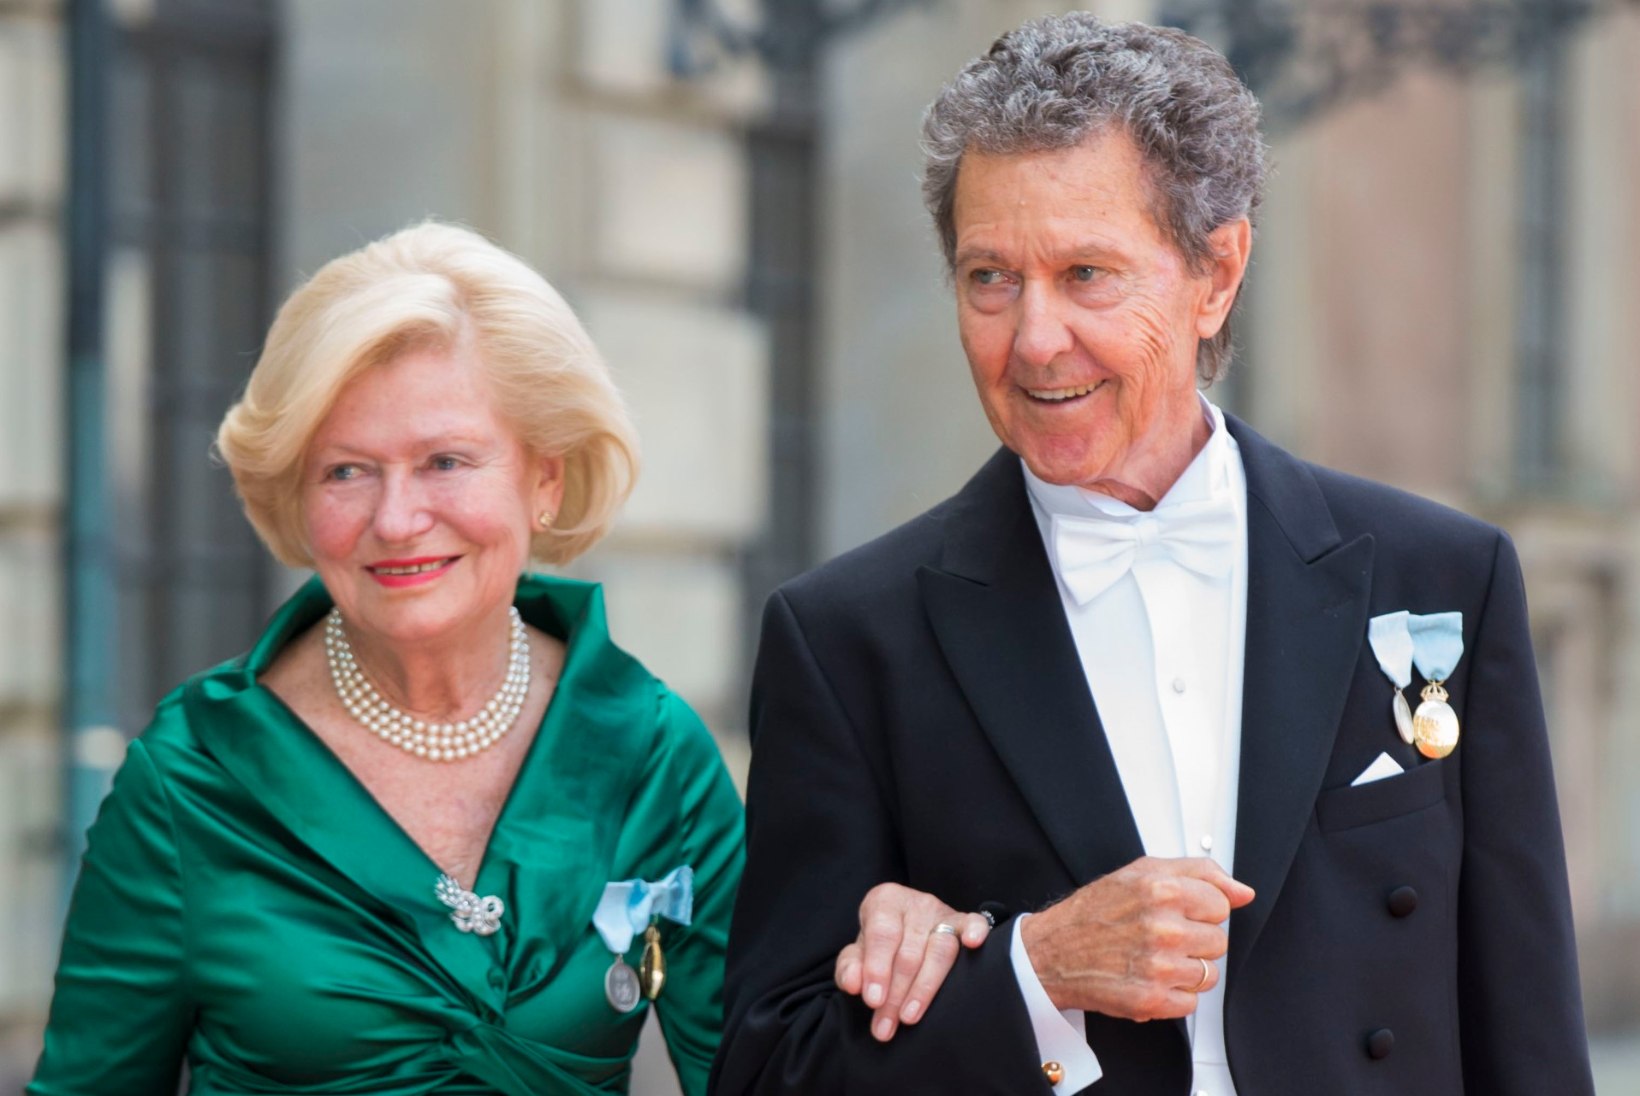 Rootsi kuninganna vend põdes Alzheimeri tõbe nagu nende emagi